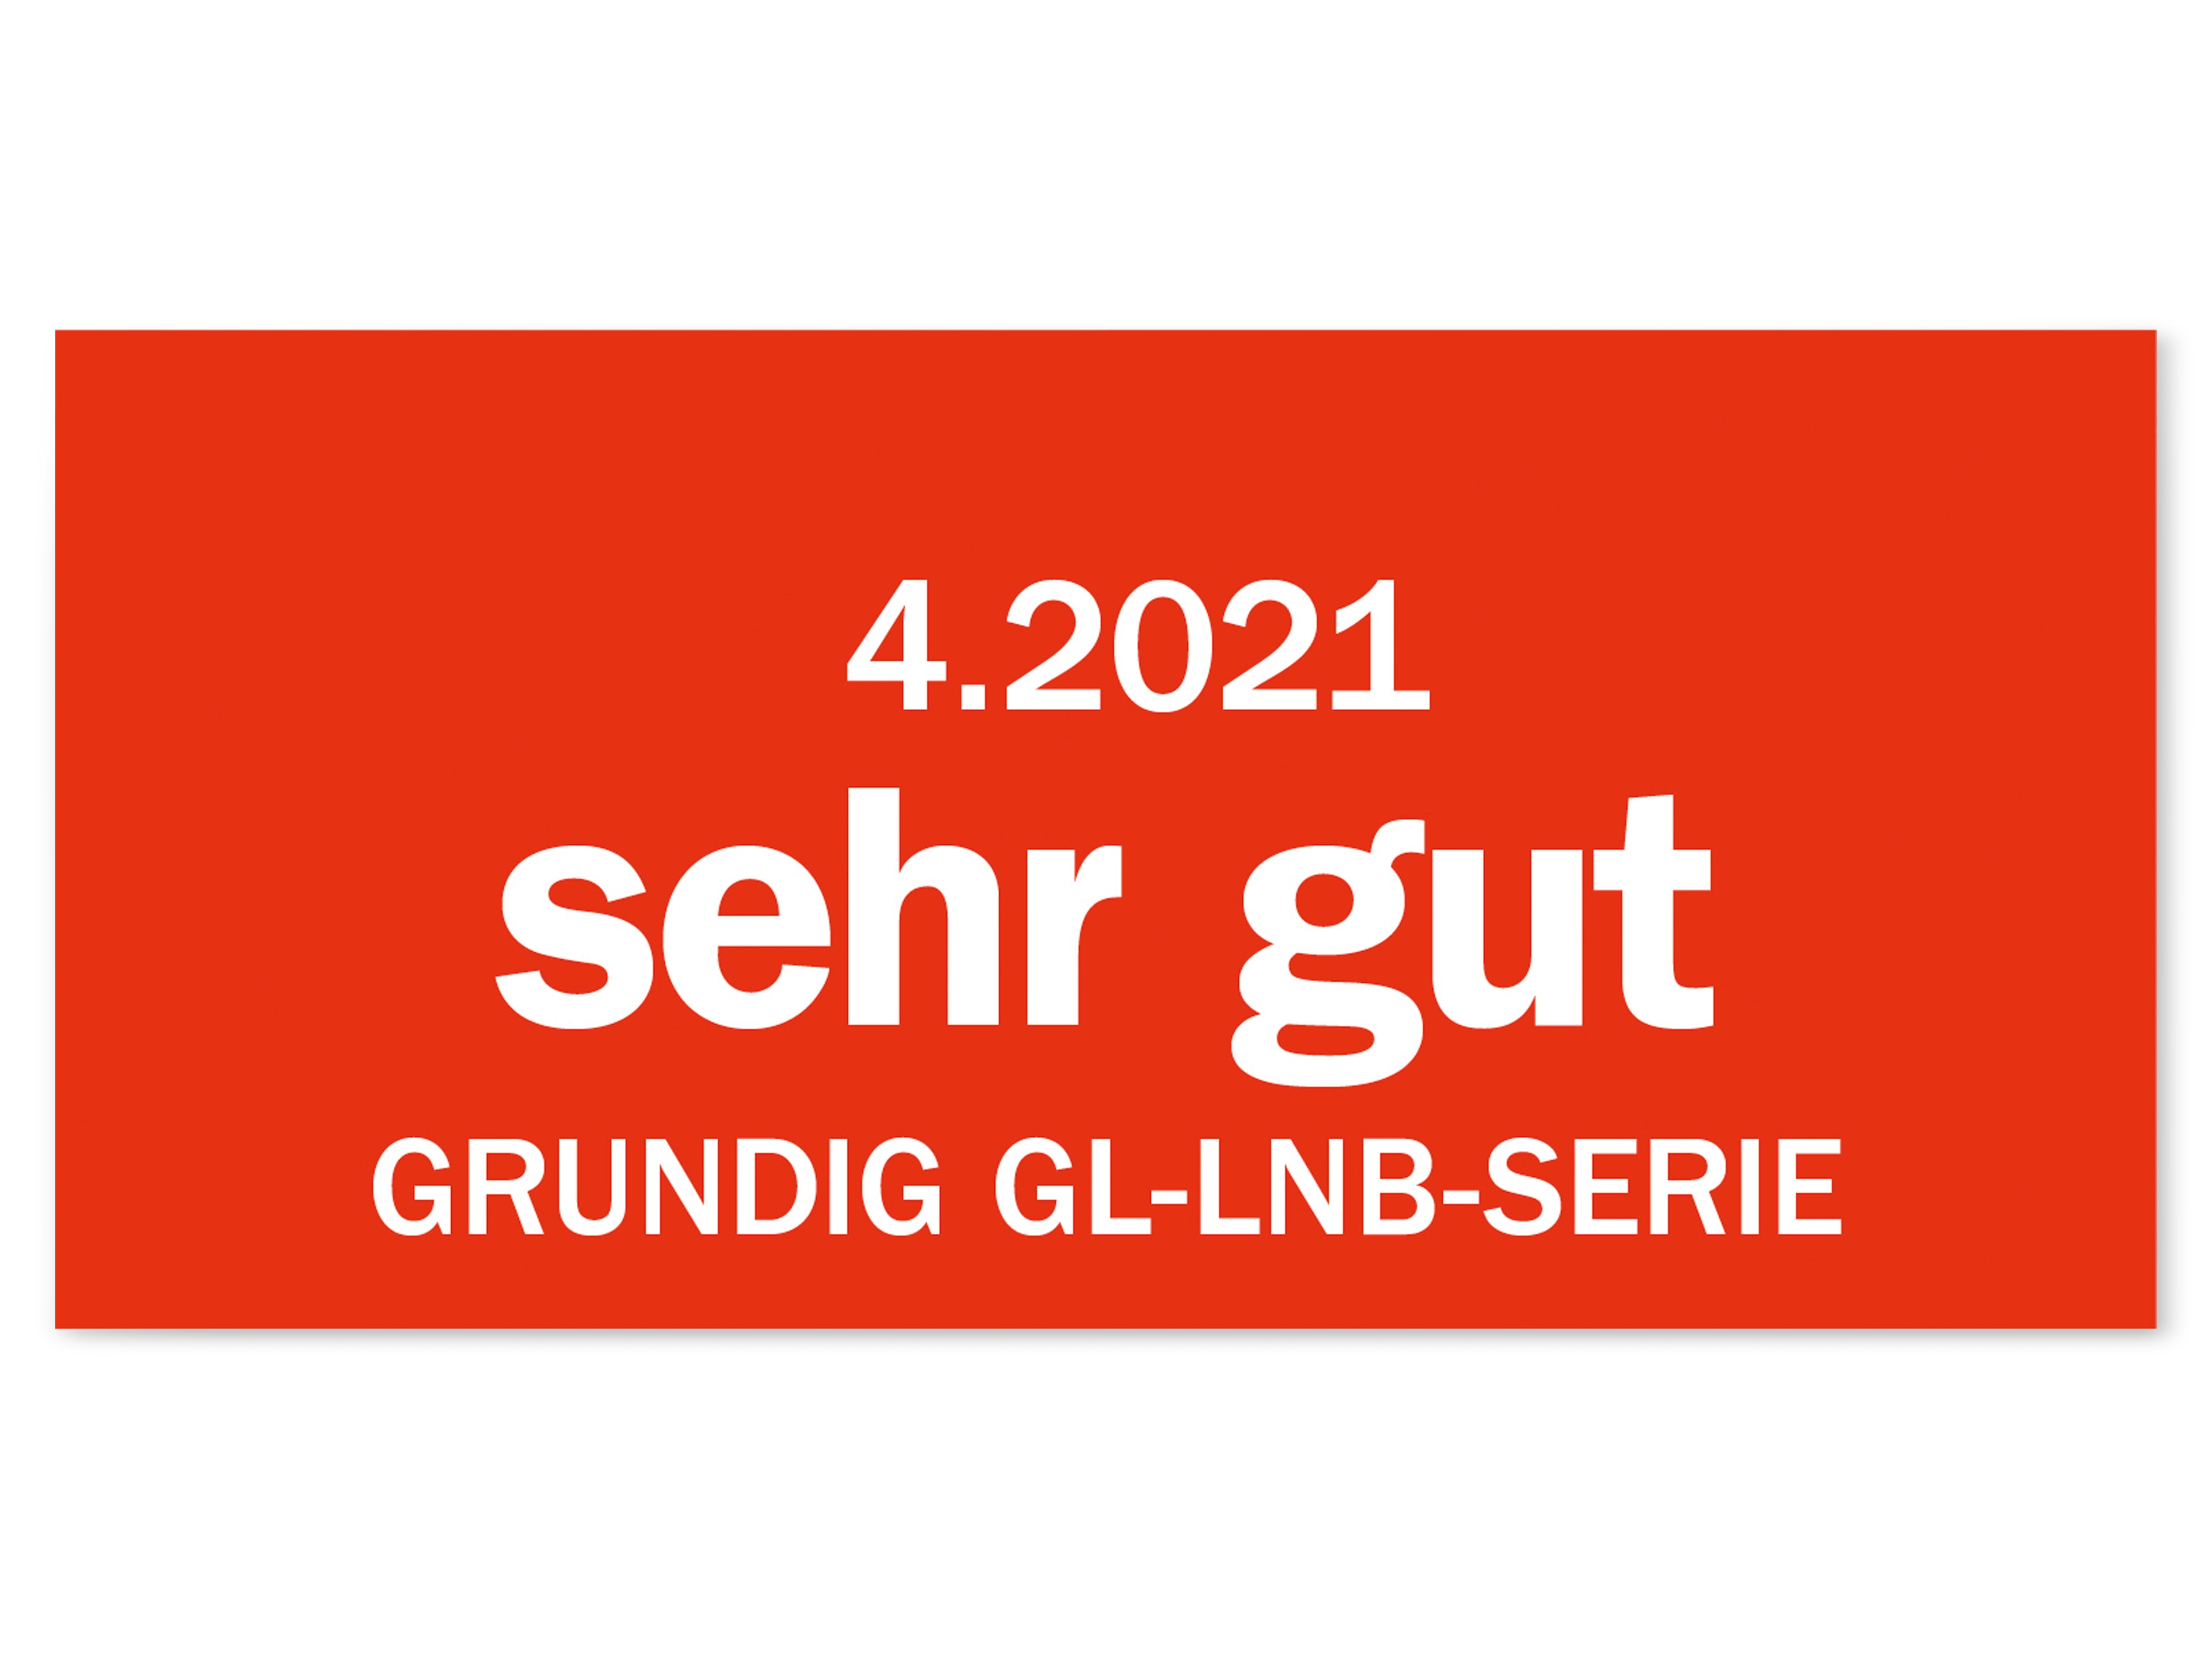 GRUNDIG Single-LNB GLS401-W